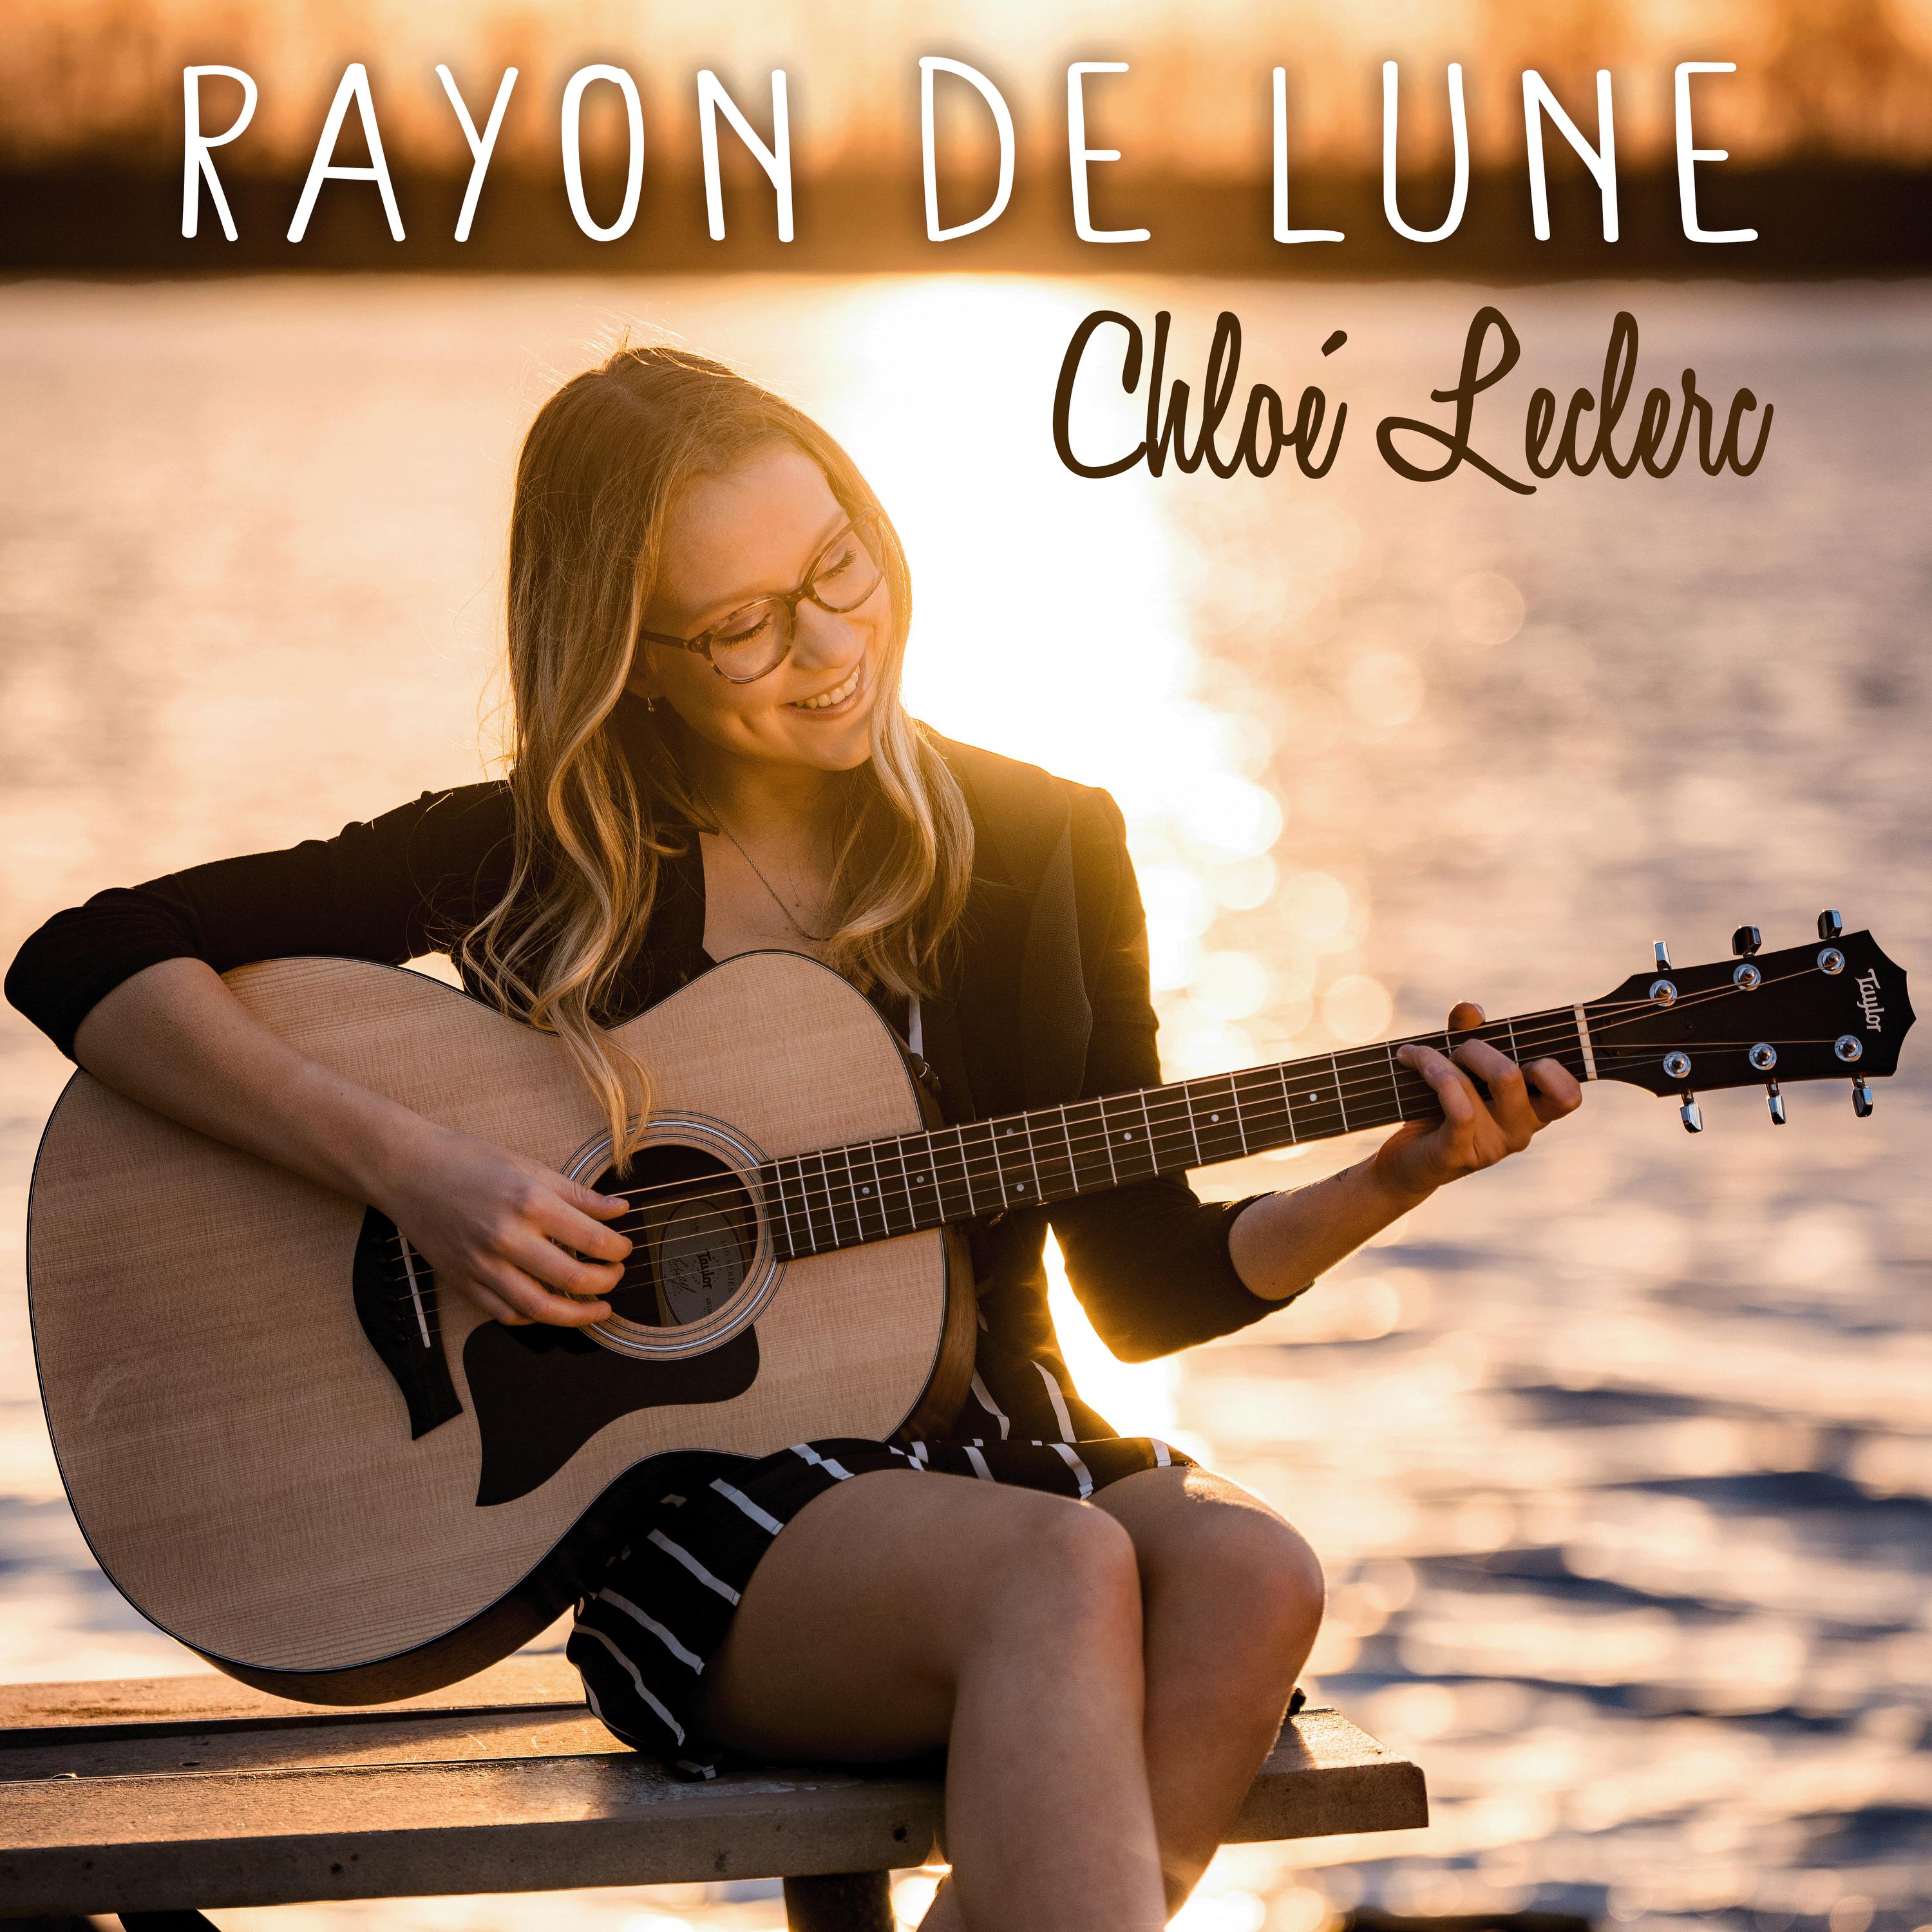 Chloé Leclerc - Rayon de lune